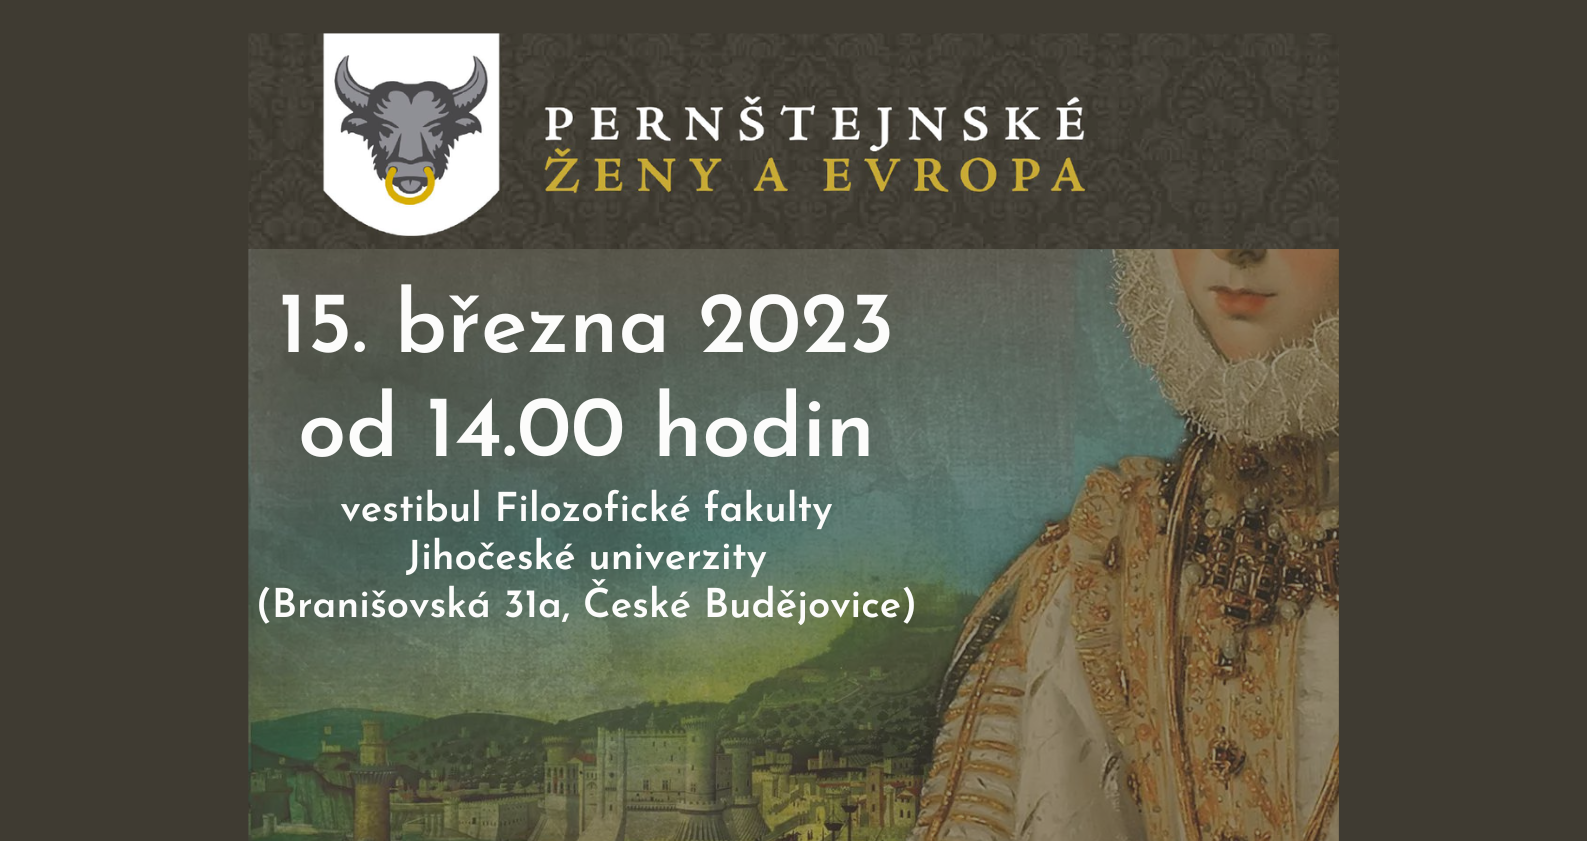 pernstejnske-zeny-a-evropa-2023_zahlavi